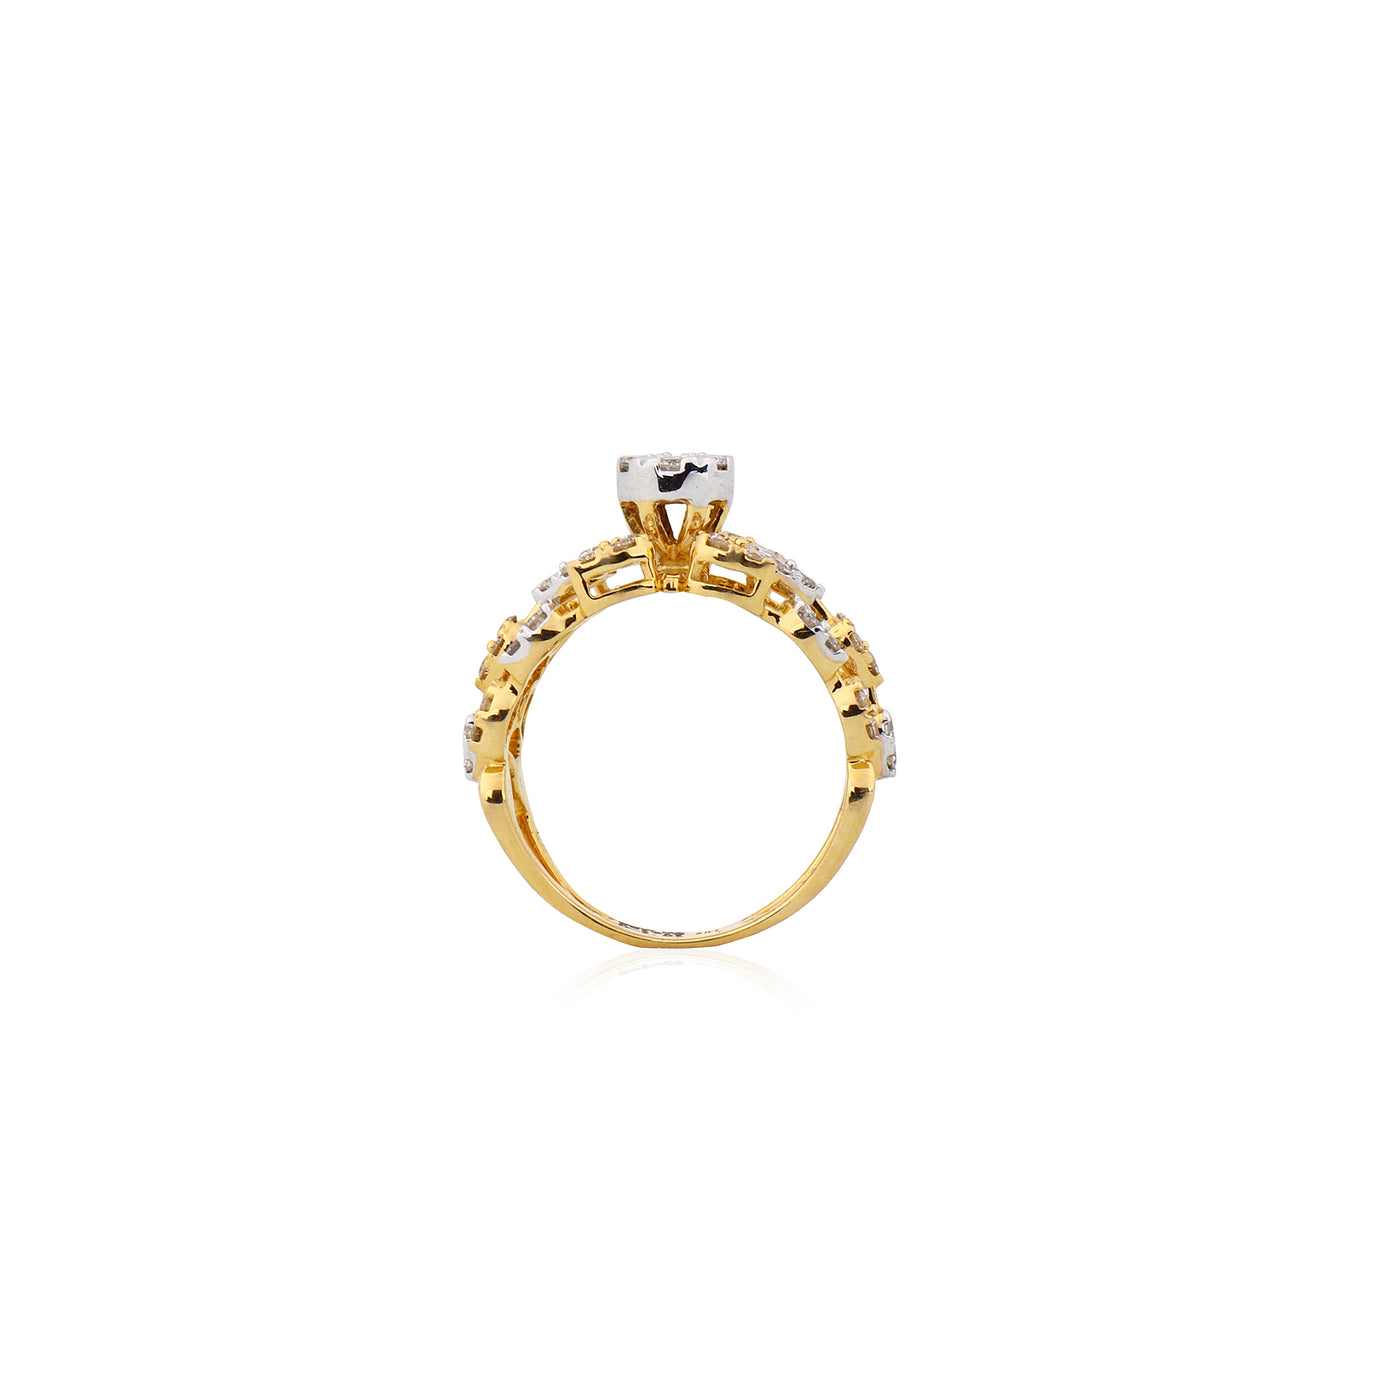 The Mandira Diamond Ring